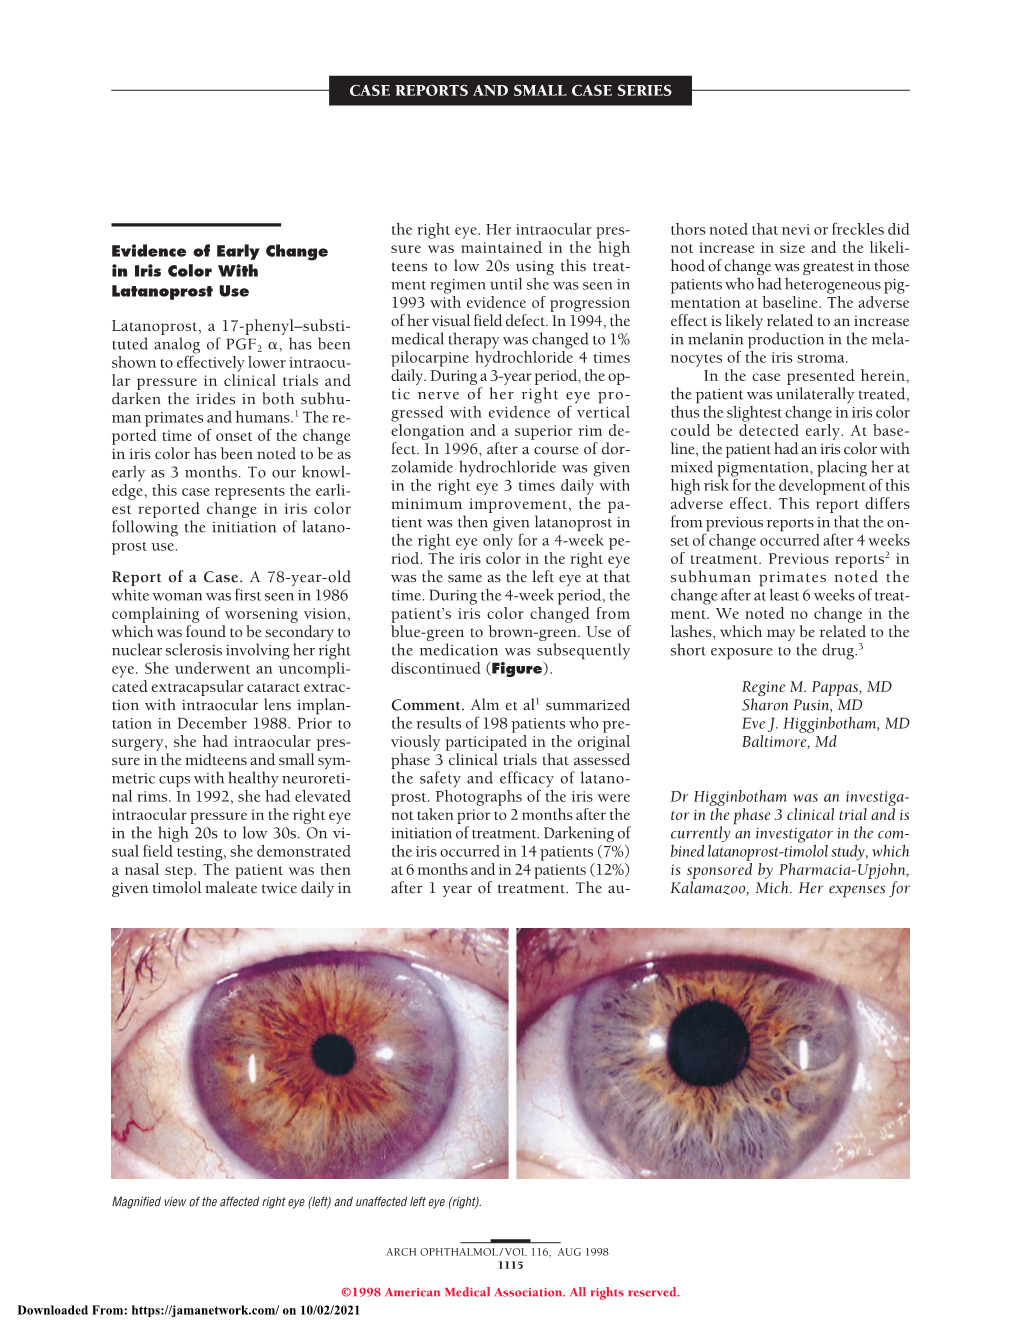 Bull's-Eye Maculopathy Associated with Chronic Macular Hole